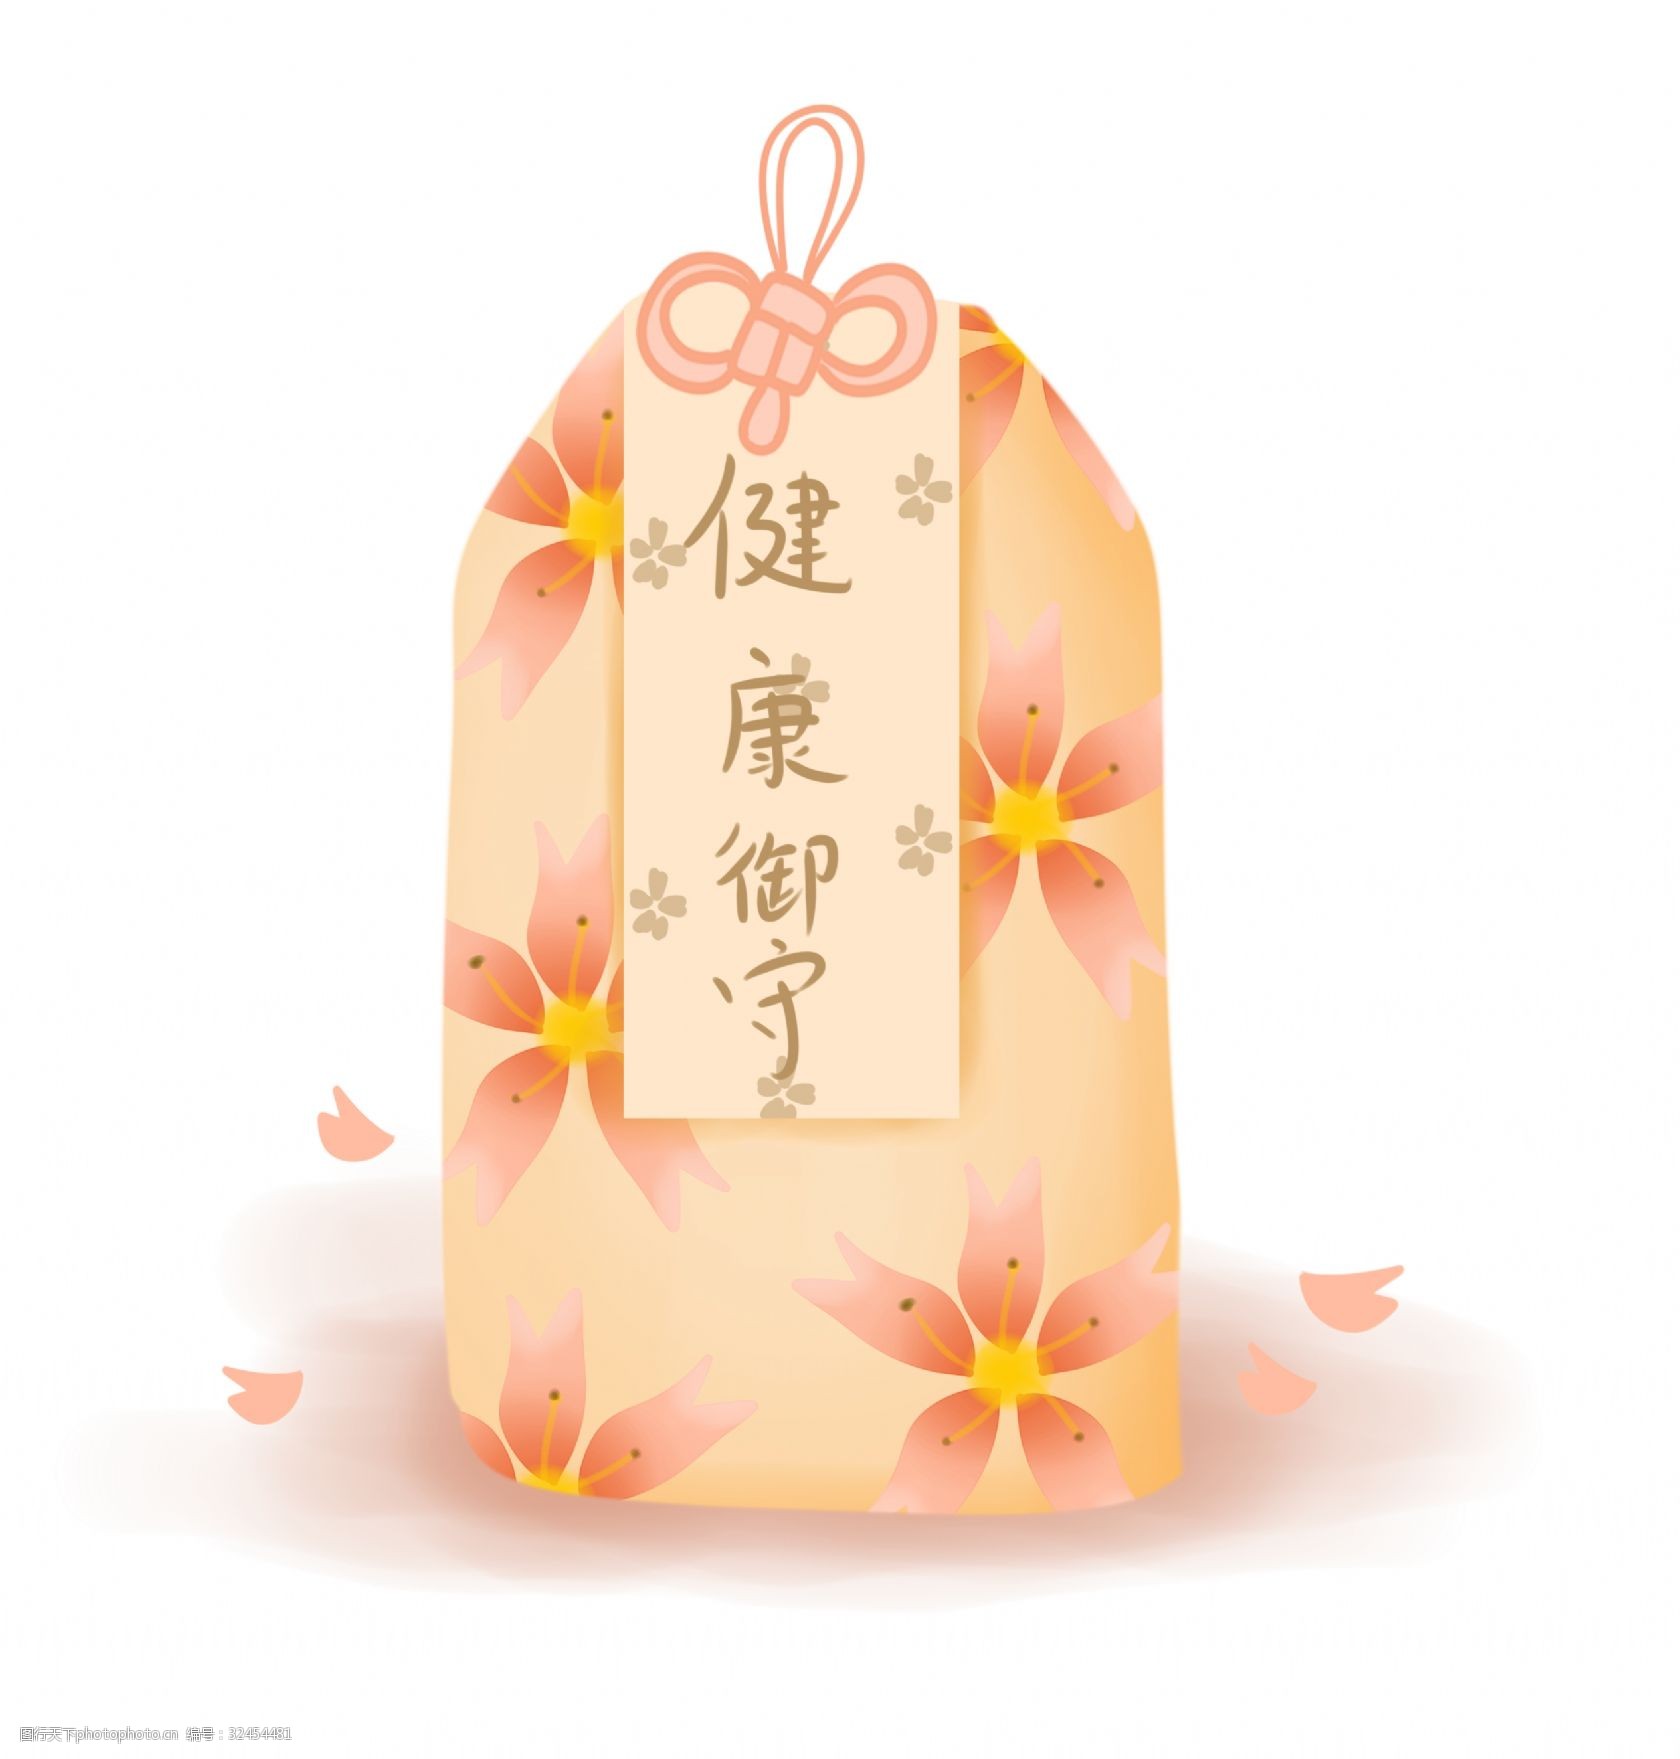 关键词:日式祈福樱花御守 日式 樱花 祈福 御守 粉色 日本 可爱 健康